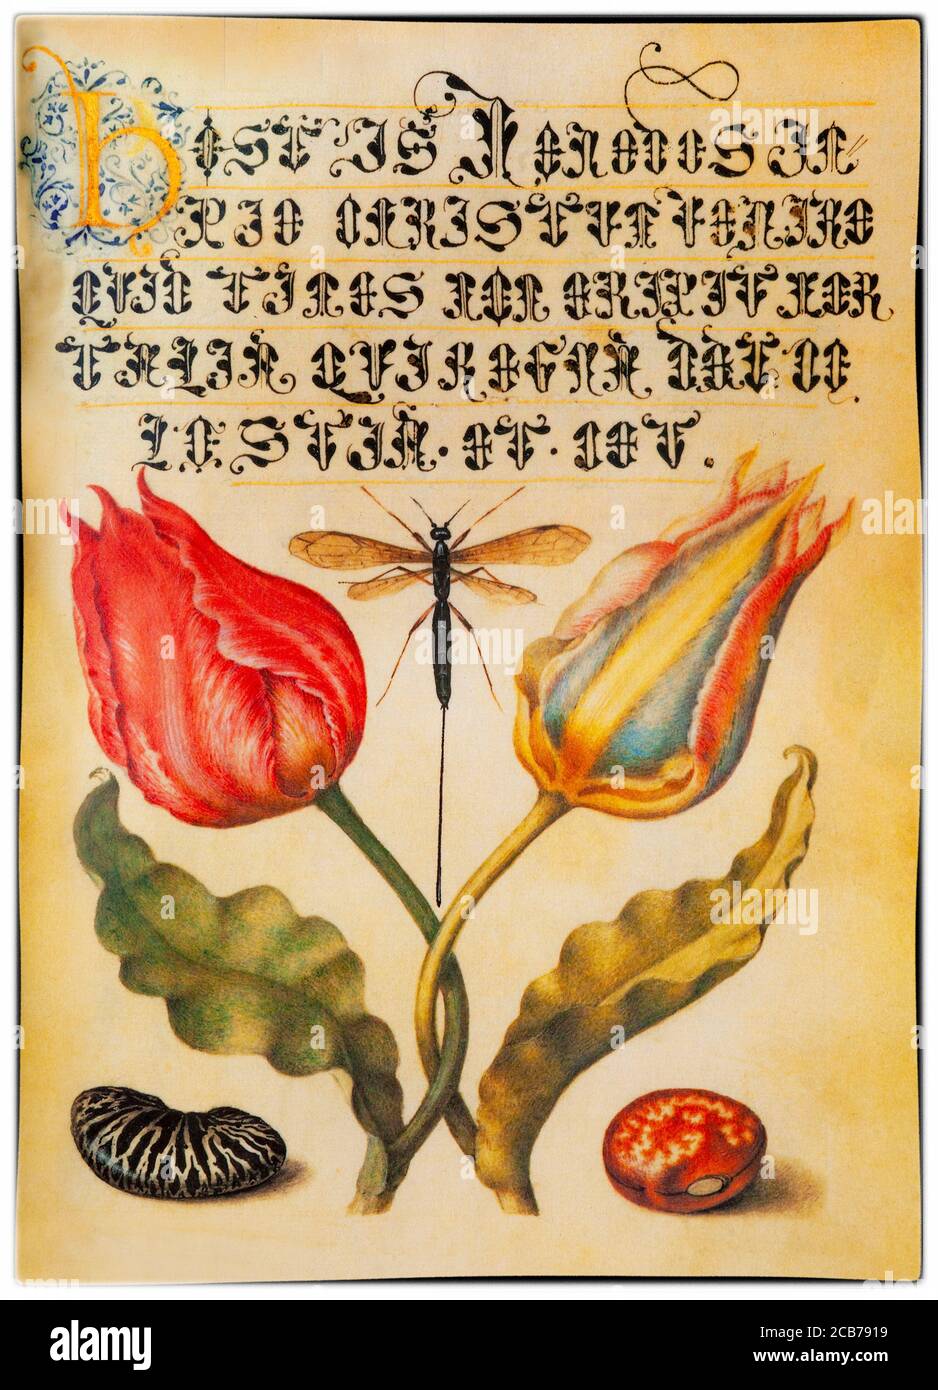 Una minatura di tulipani di Georg Hoefnagel (1542-1601), pittore fiammingo incaricato dall'imperatore Rudolf II di illustrare la Mira calligraphiae monumenta (il Libro modello della Calligraphy) in cui compare la minatura. Le piante in primo piano erano quelle coltivate da Charles de l'Ecuse aka Clusius (1526-1609) direttore del giardino botanico di Leida in Olanda. Foto Stock